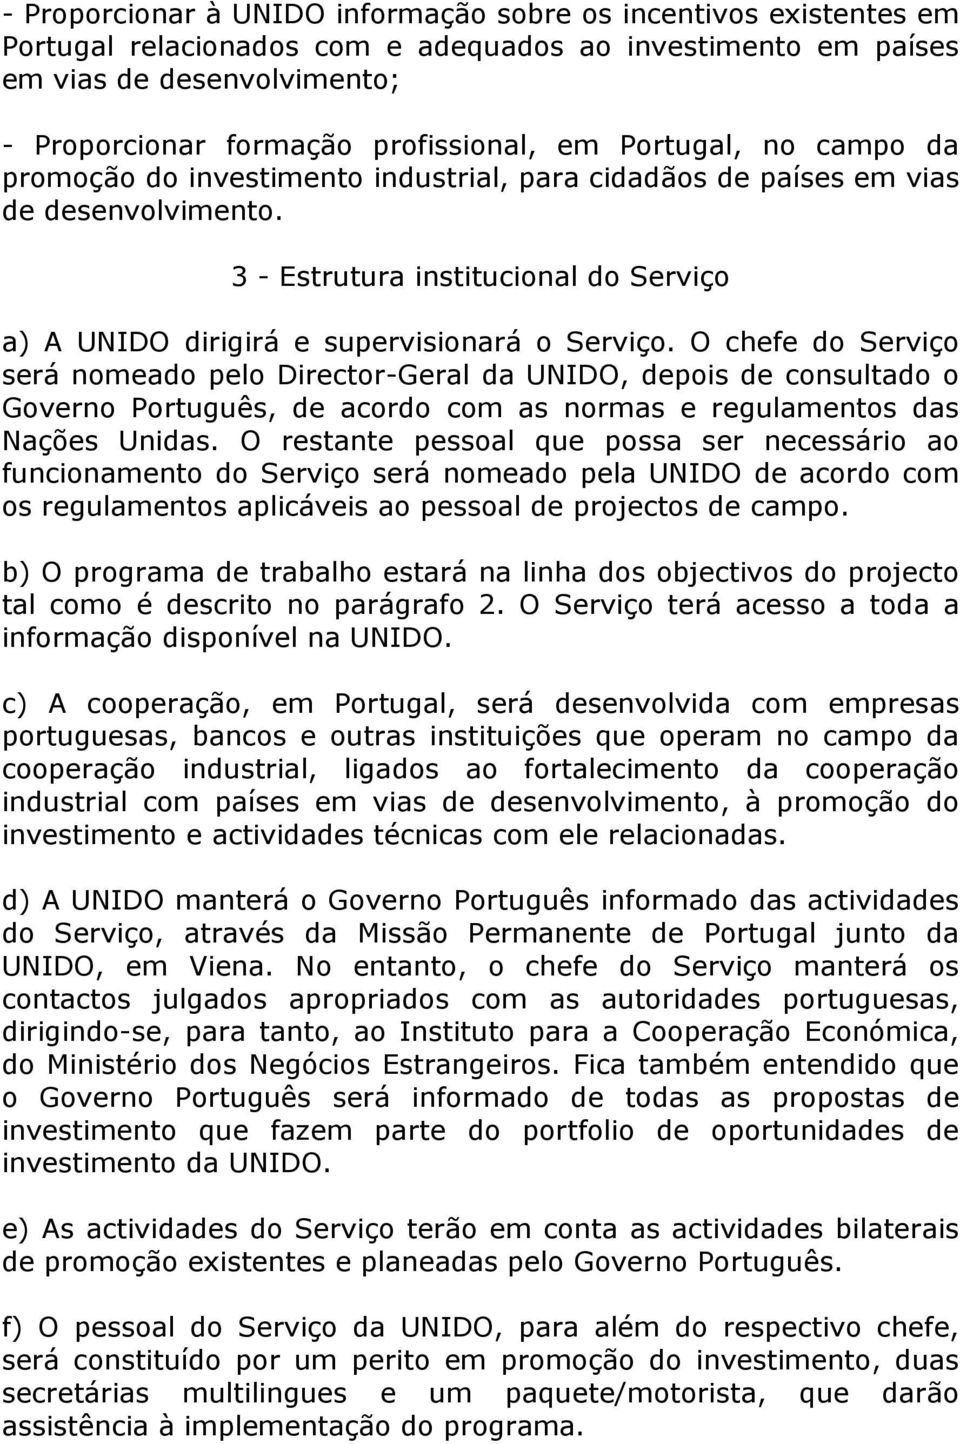 O chefe do Serviço será nomeado pelo Director-Geral da UNIDO, depois de consultado o Governo Português, de acordo com as normas e regulamentos das Nações Unidas.